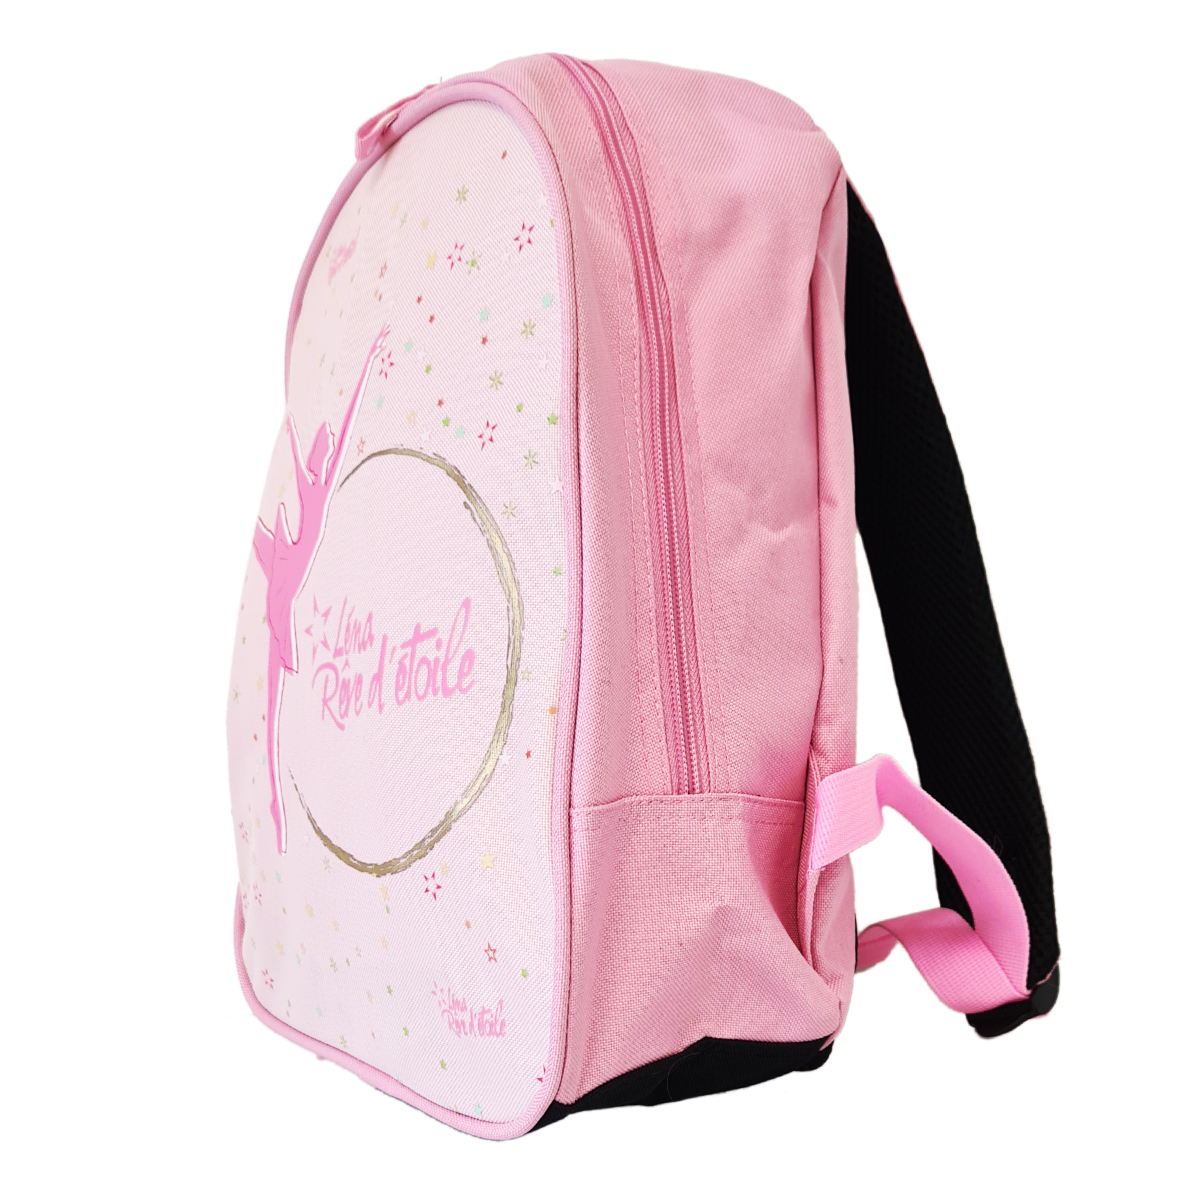 Ballerina backpack